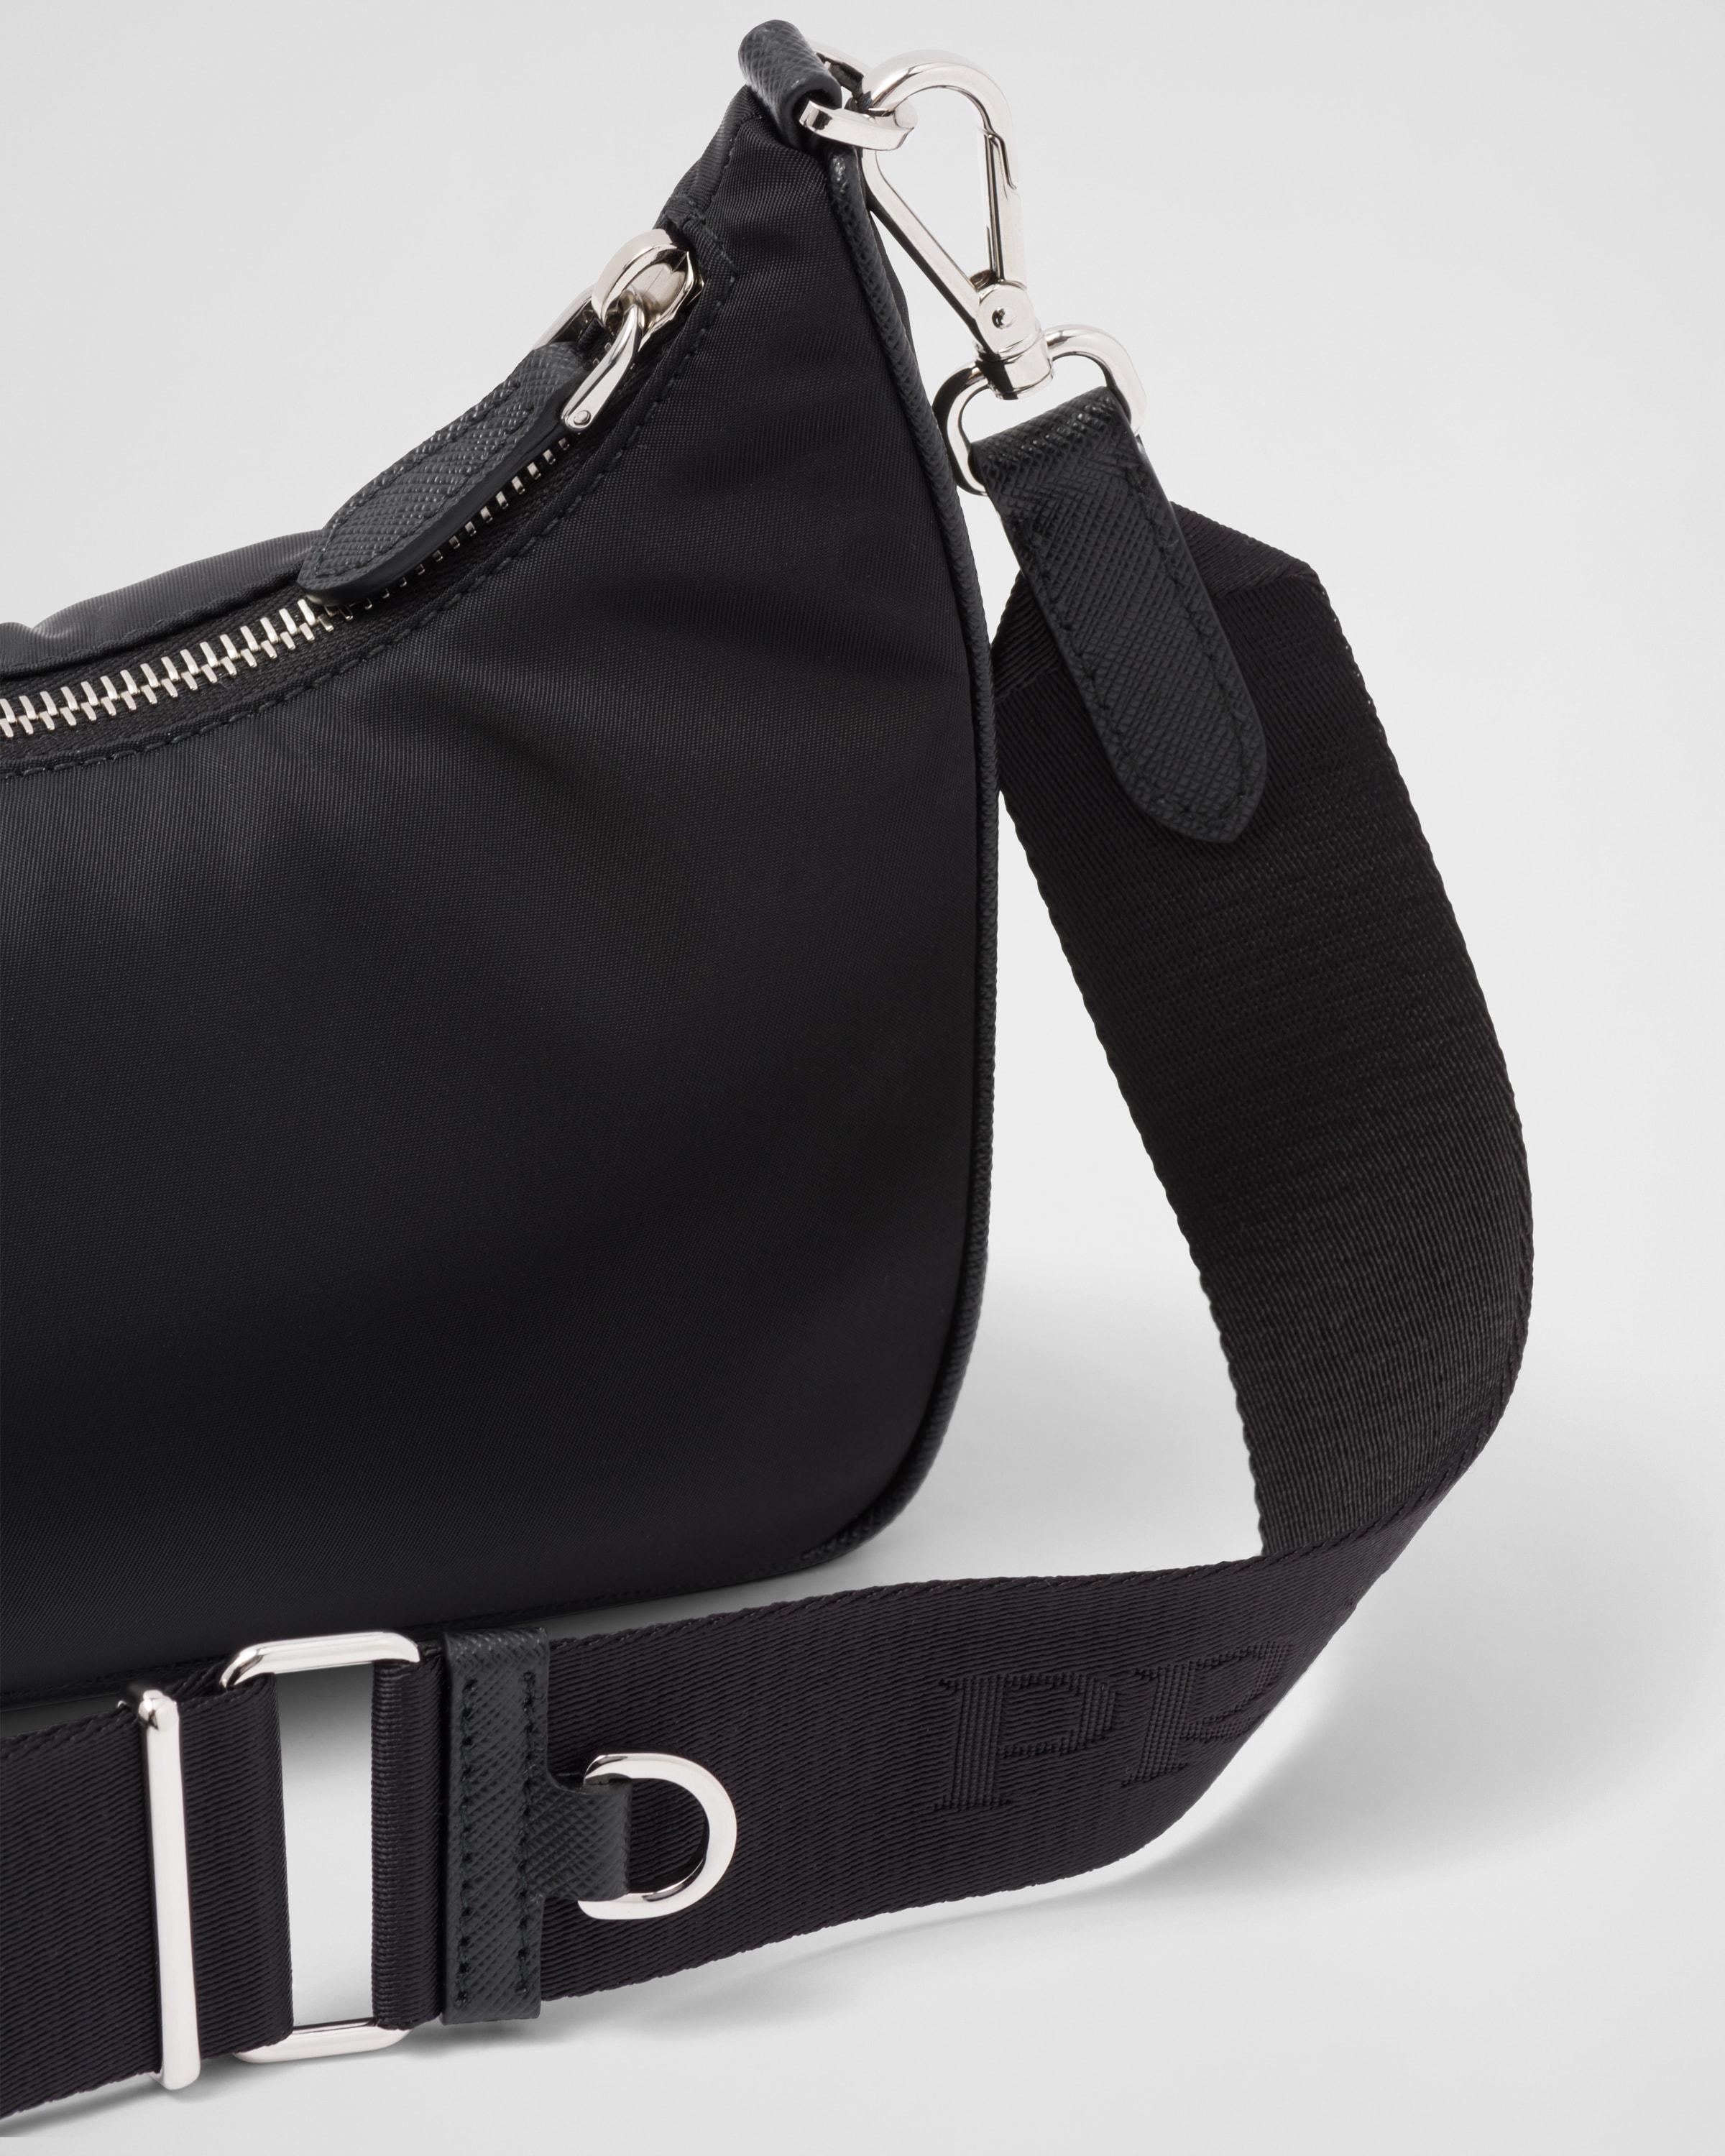 Re-edition 2005 handbag Prada Black in Synthetic - 34655090